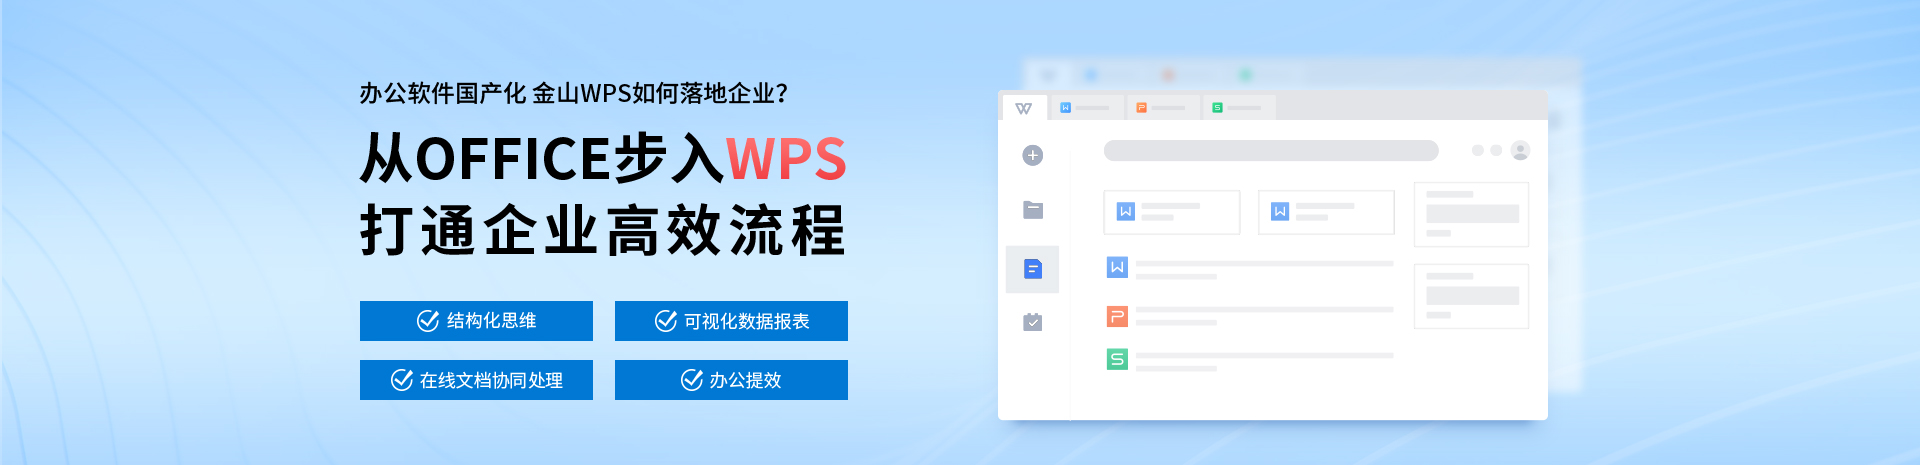 深圳办公软件-PPT培训